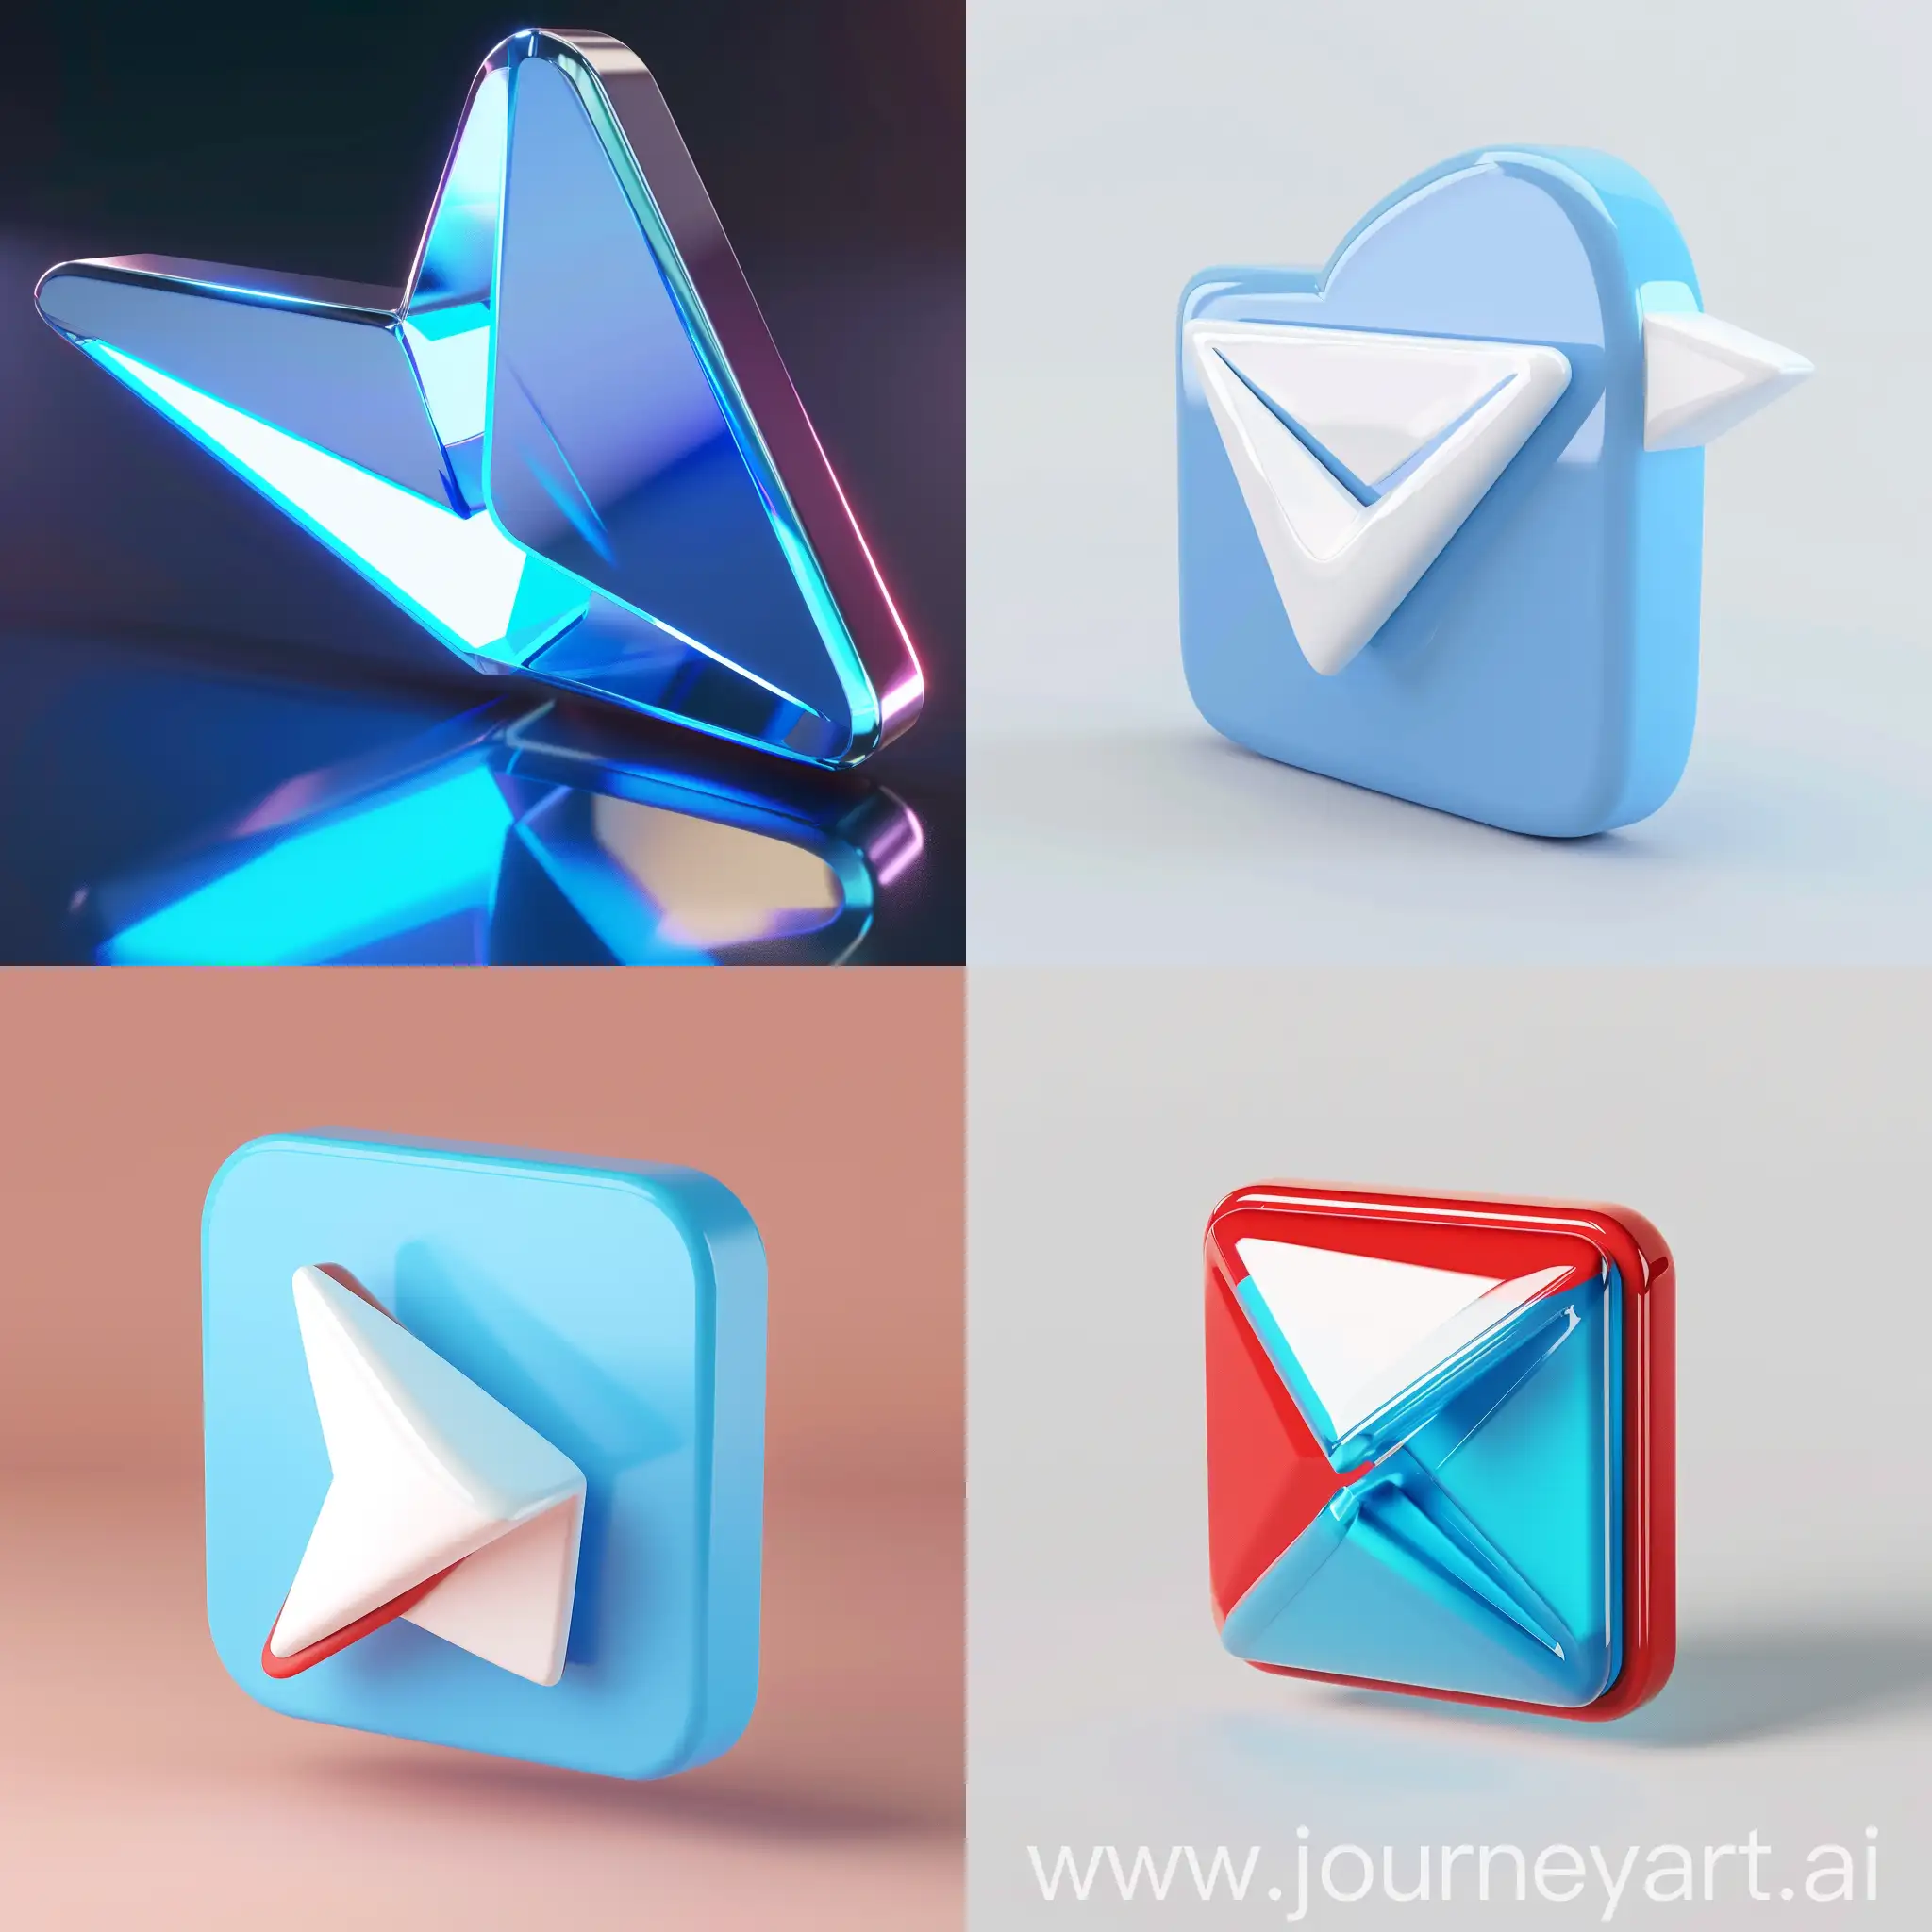 Telegram-Premium-3D-Logo-Design-Concept-with-Vibrant-Colors